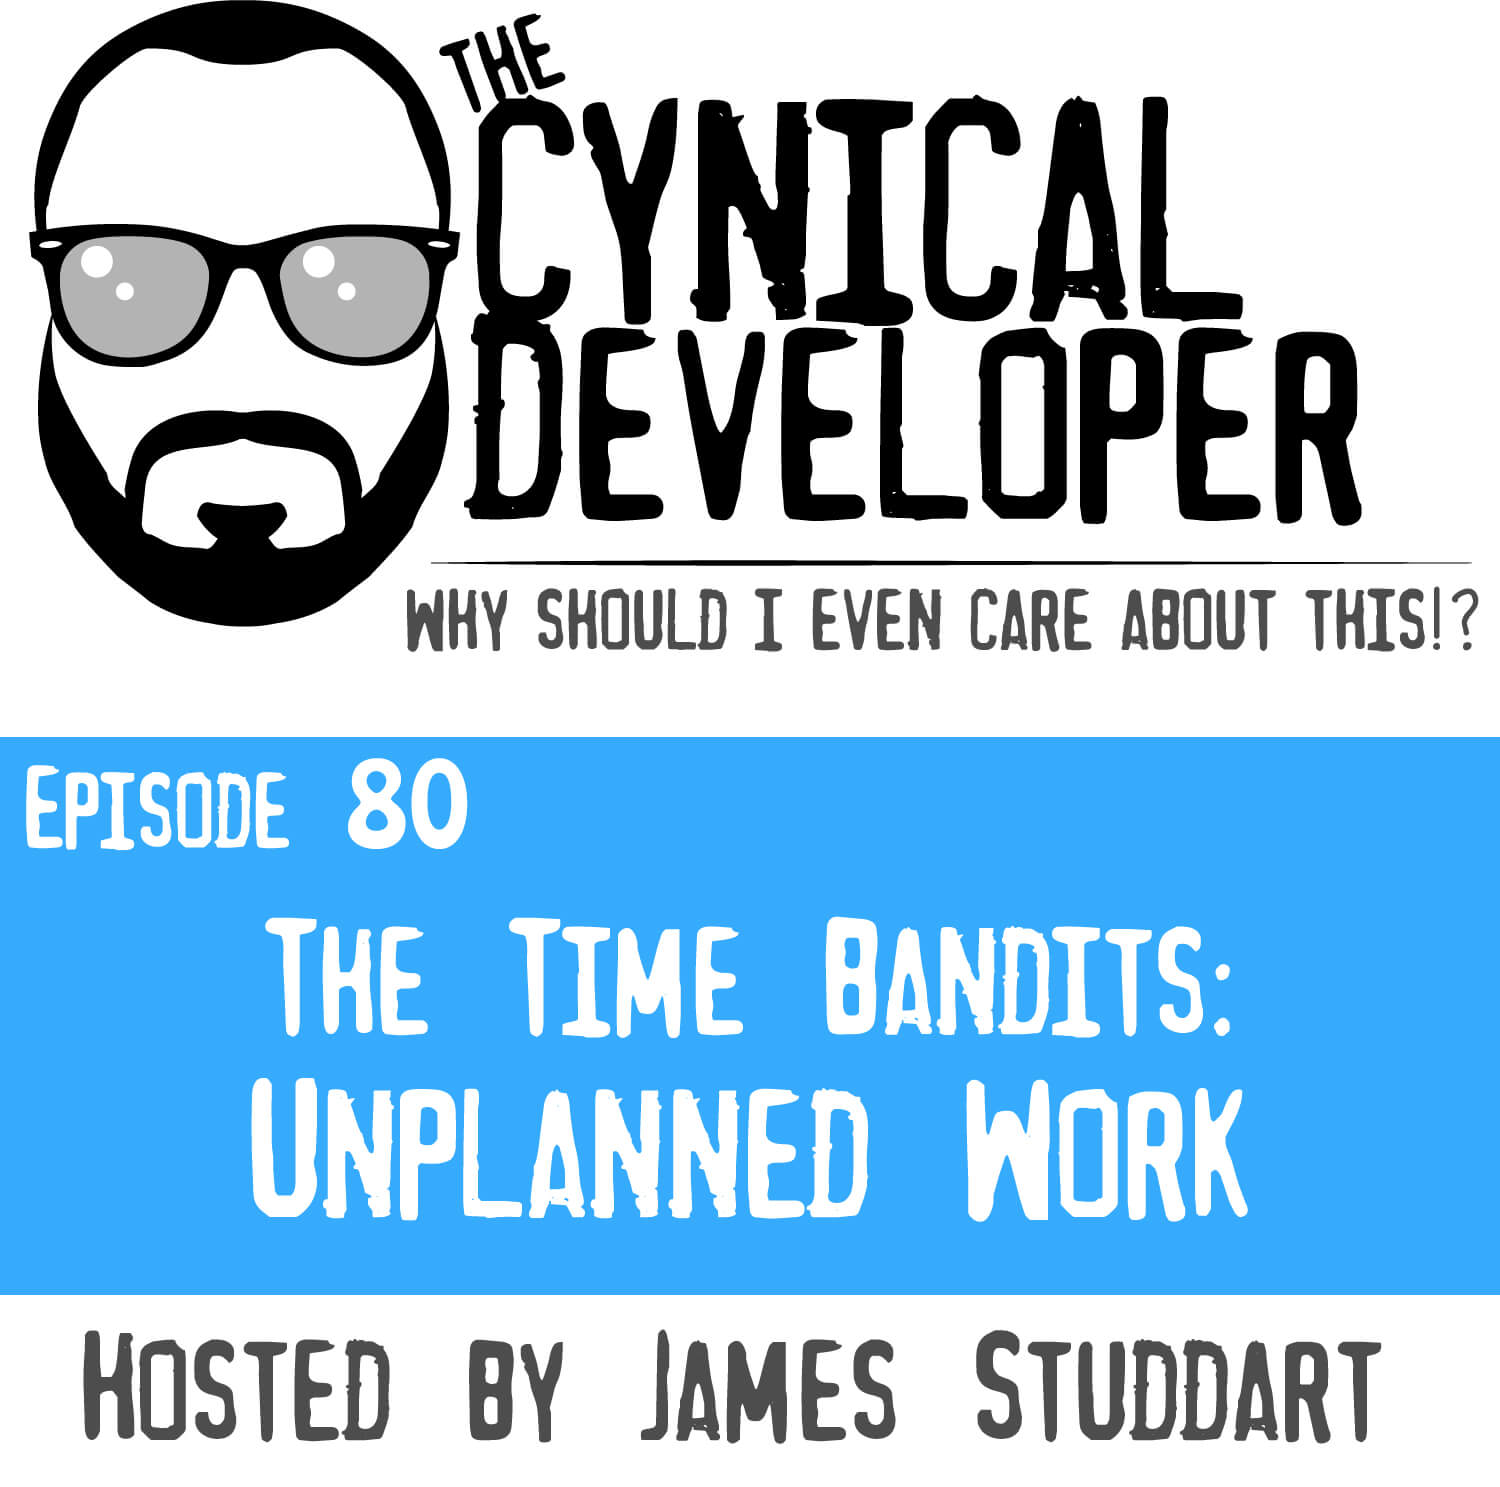 Episode 80 - Unplanned Work